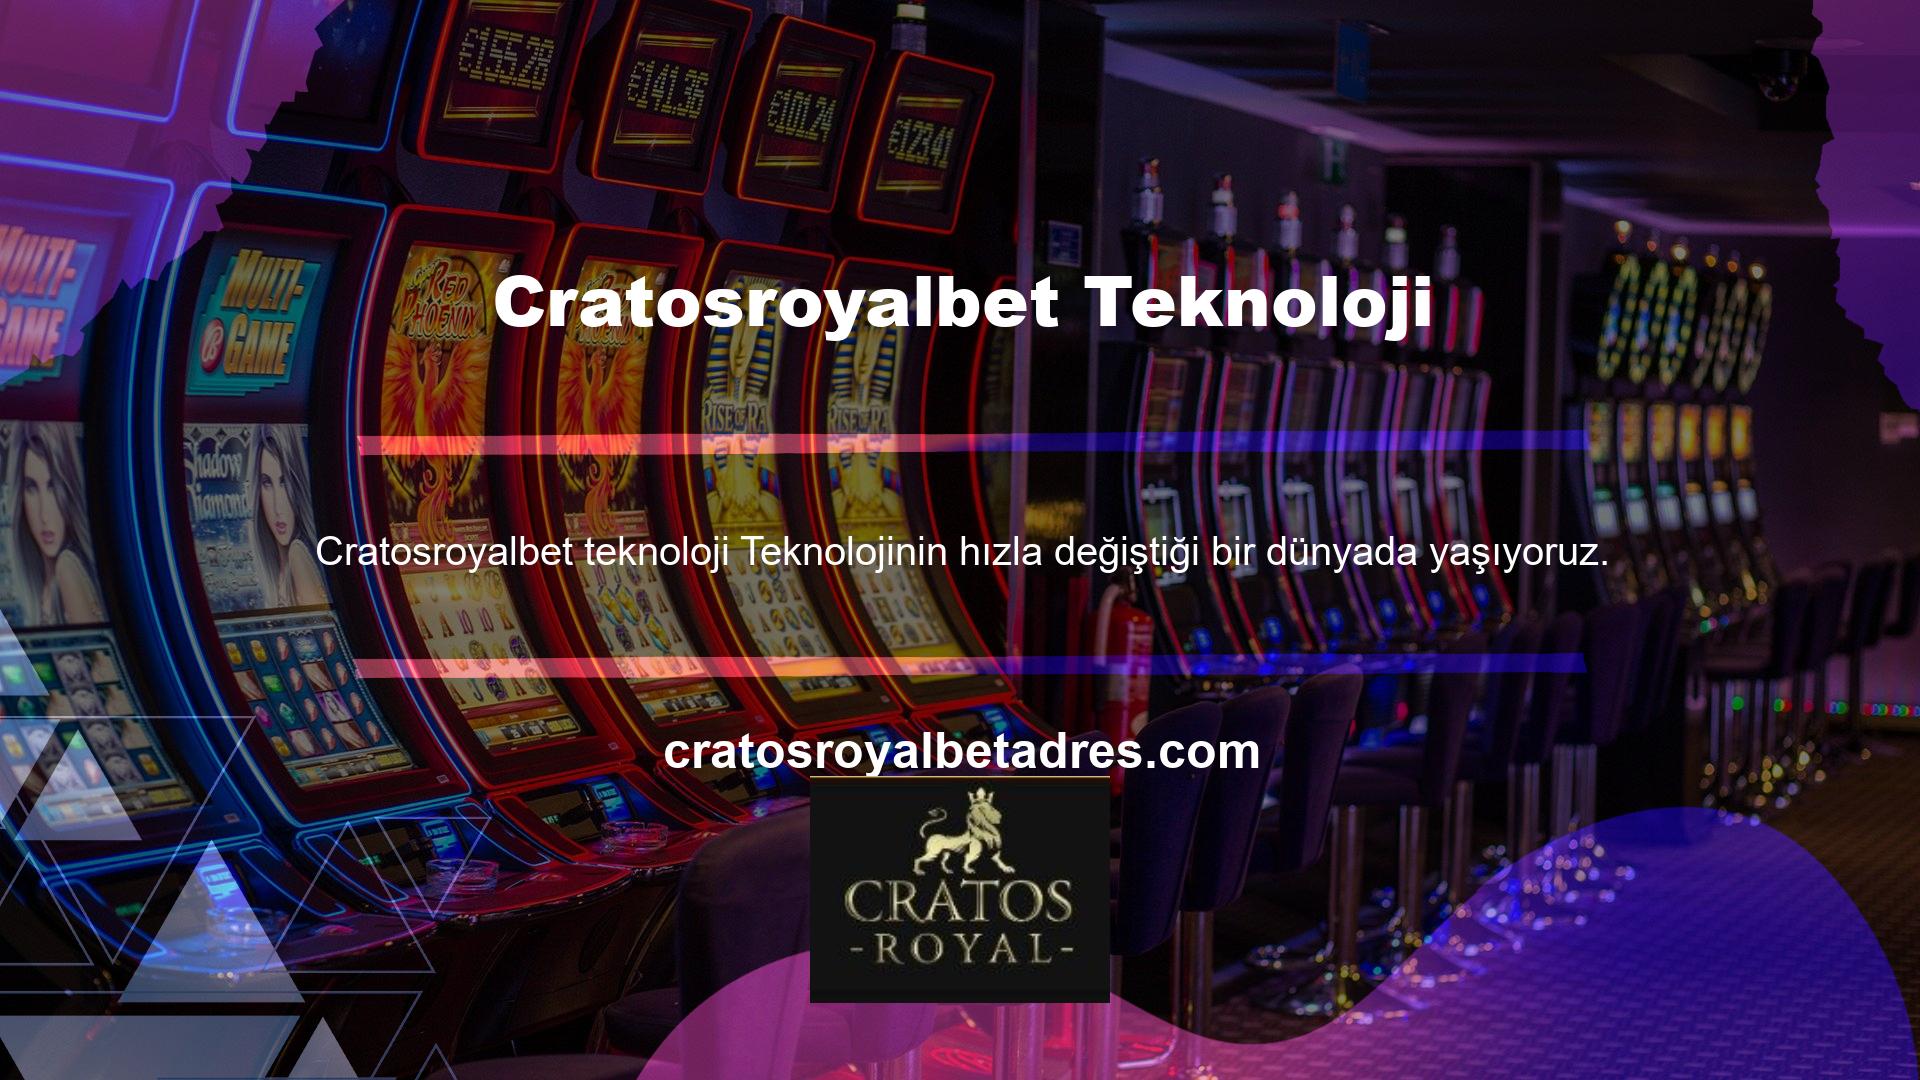 Casino siteleri bugünlerde mobil uygulamalar geliştirmekle meşgul